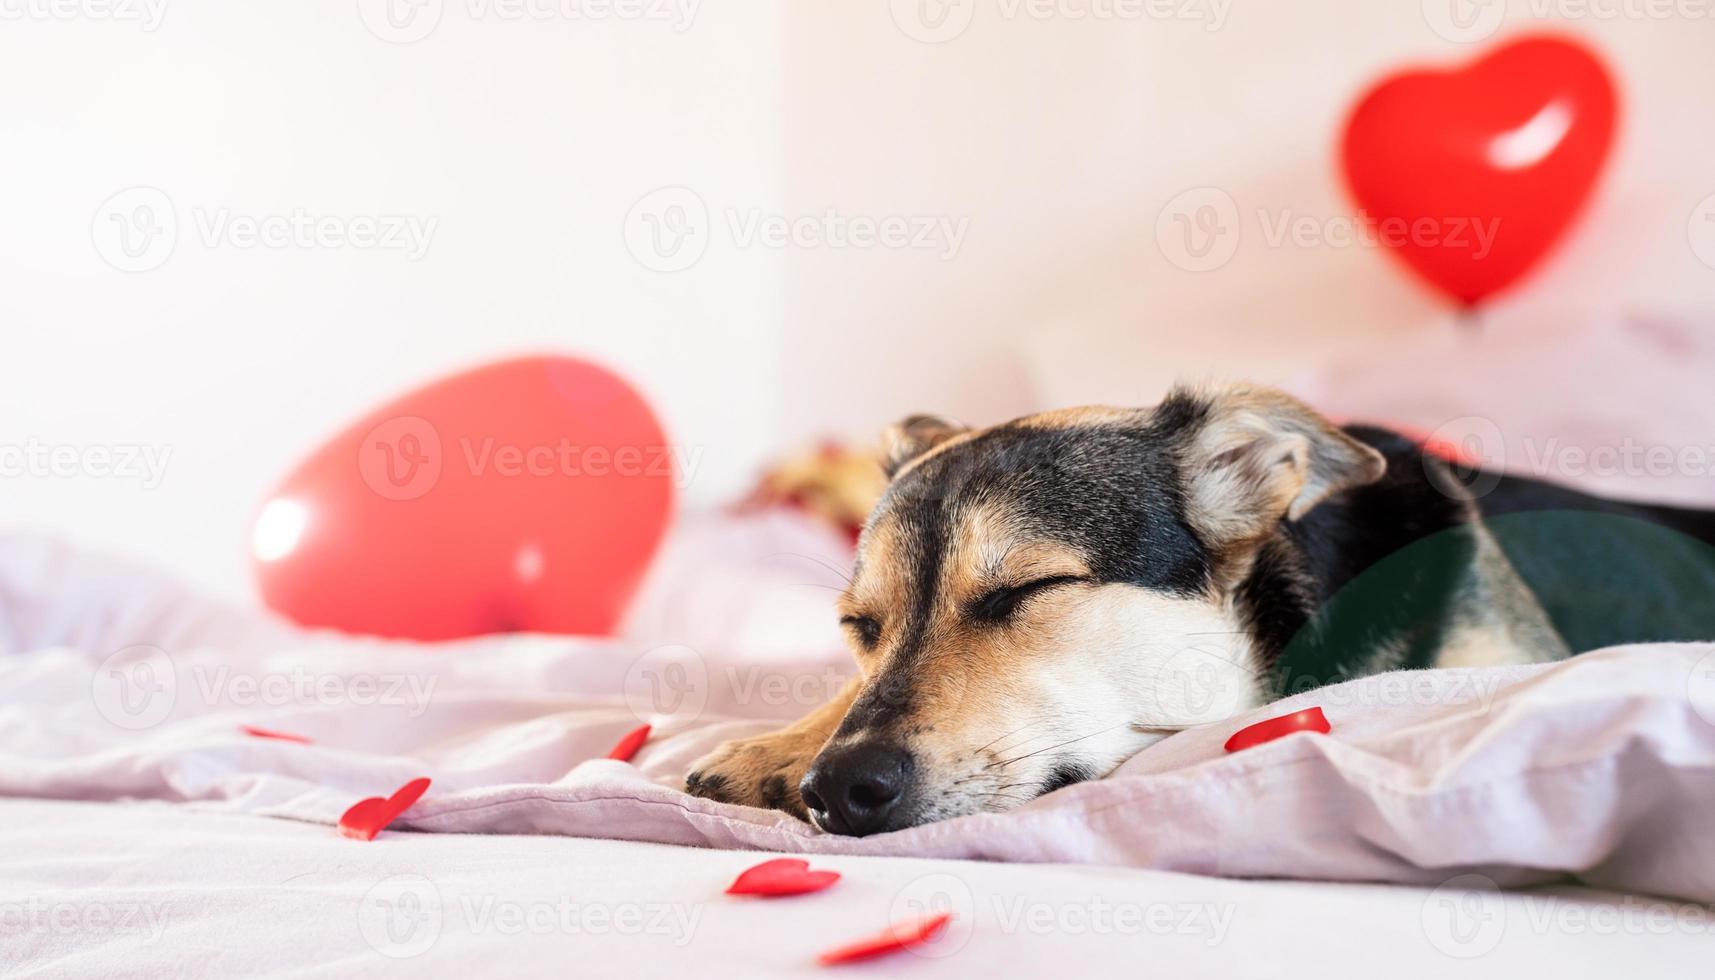 cucciolo decorato per il letto di san valentino con palloncini rossi foto